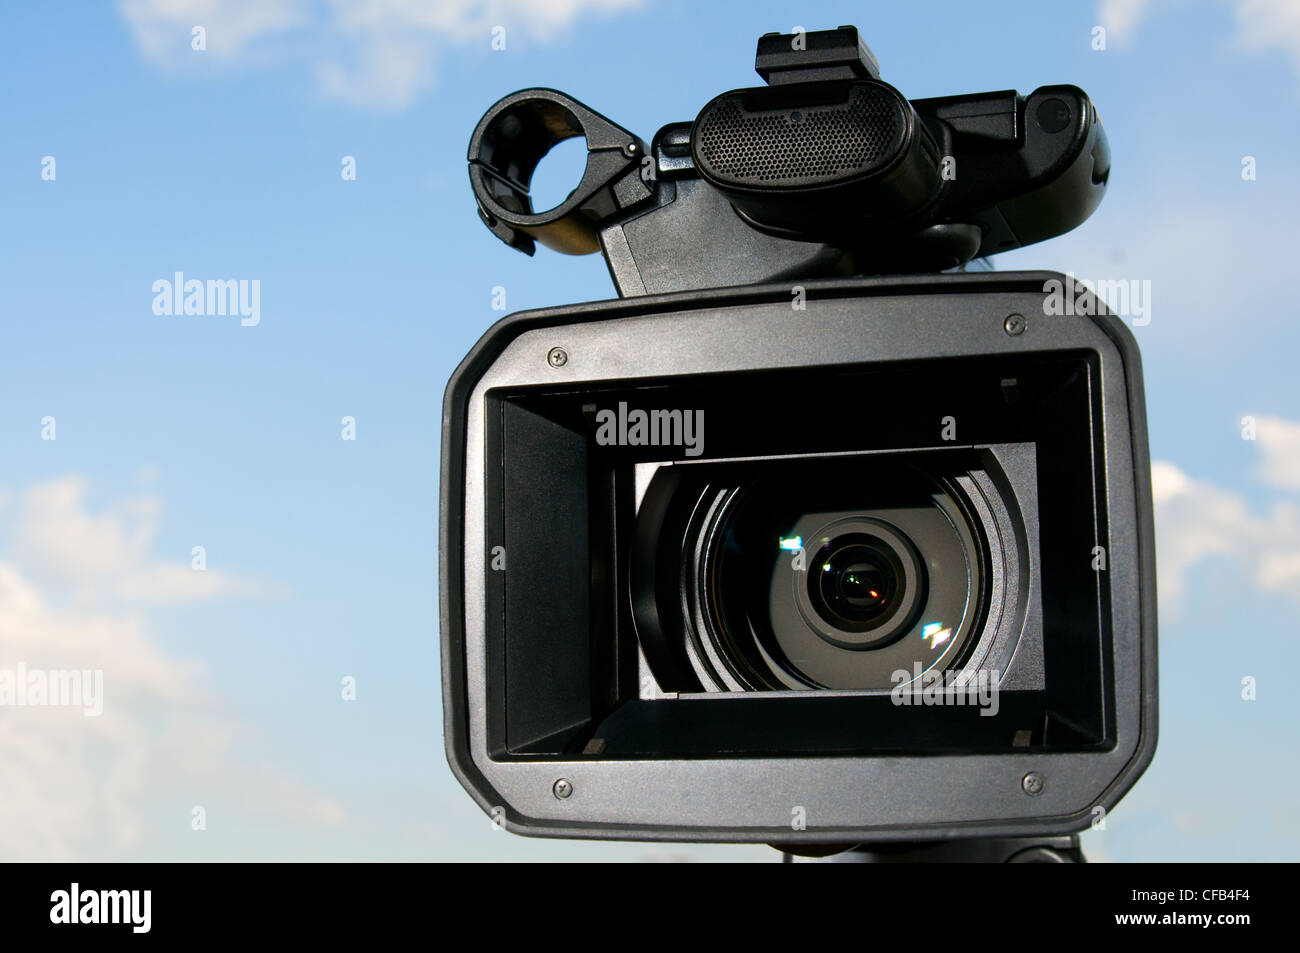 Videocamera digitale immagini e fotografie stock ad alta risoluzione - Alamy